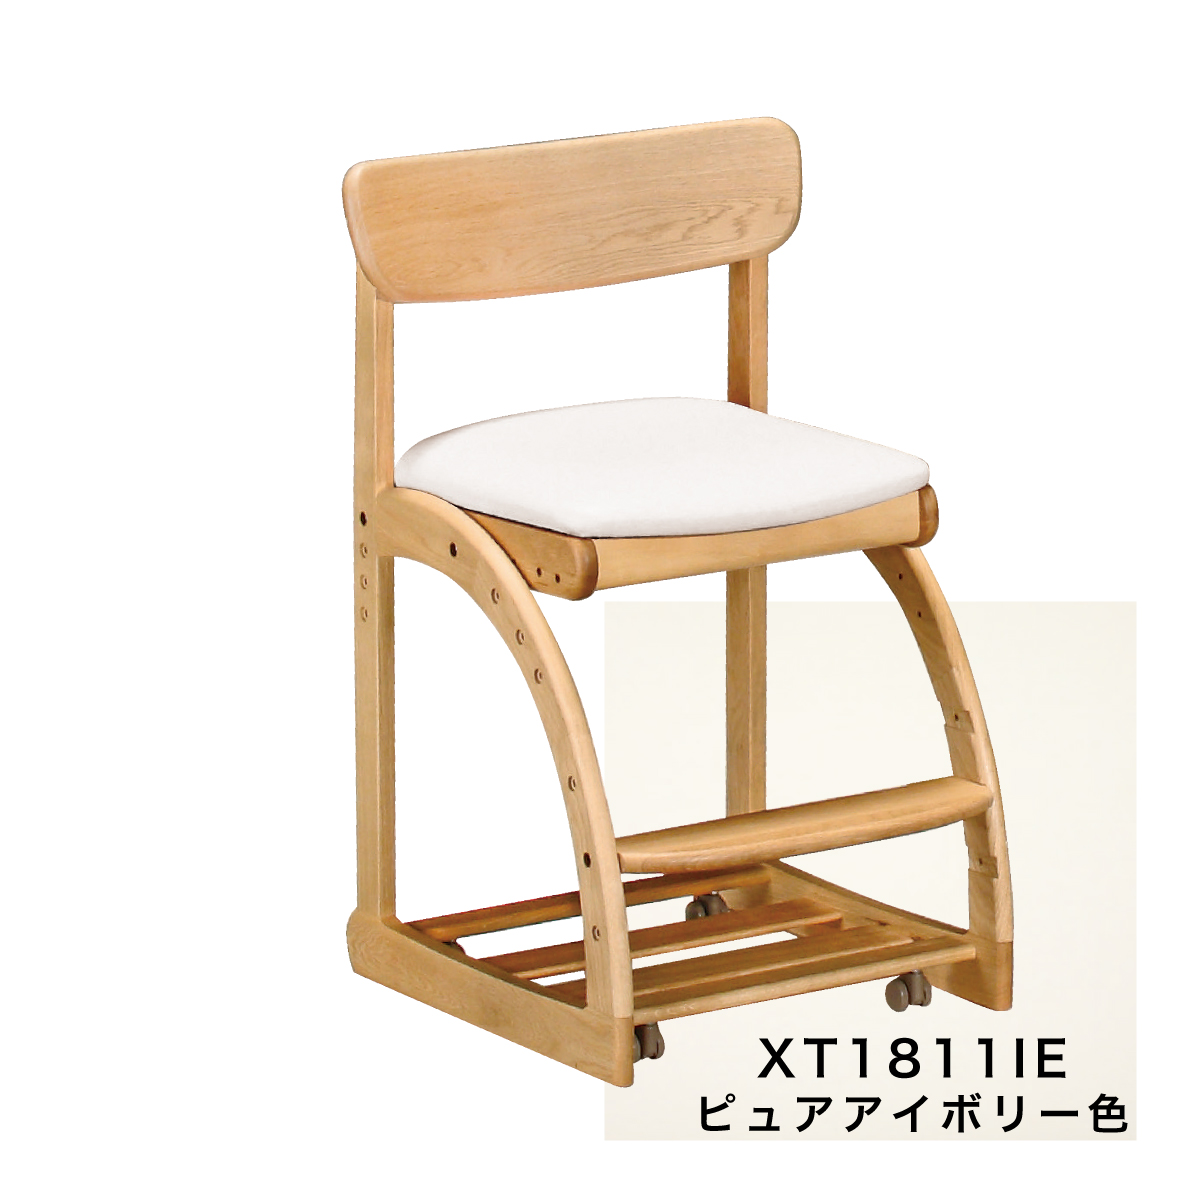 カリモク 学習椅子 木製 XT1811 ピュアオーク色 デスクチェア 学習机 椅子 子供 高さ調整 正しい 姿勢 書斎 キャスター 付 安心の国内生産  karimoku 高級